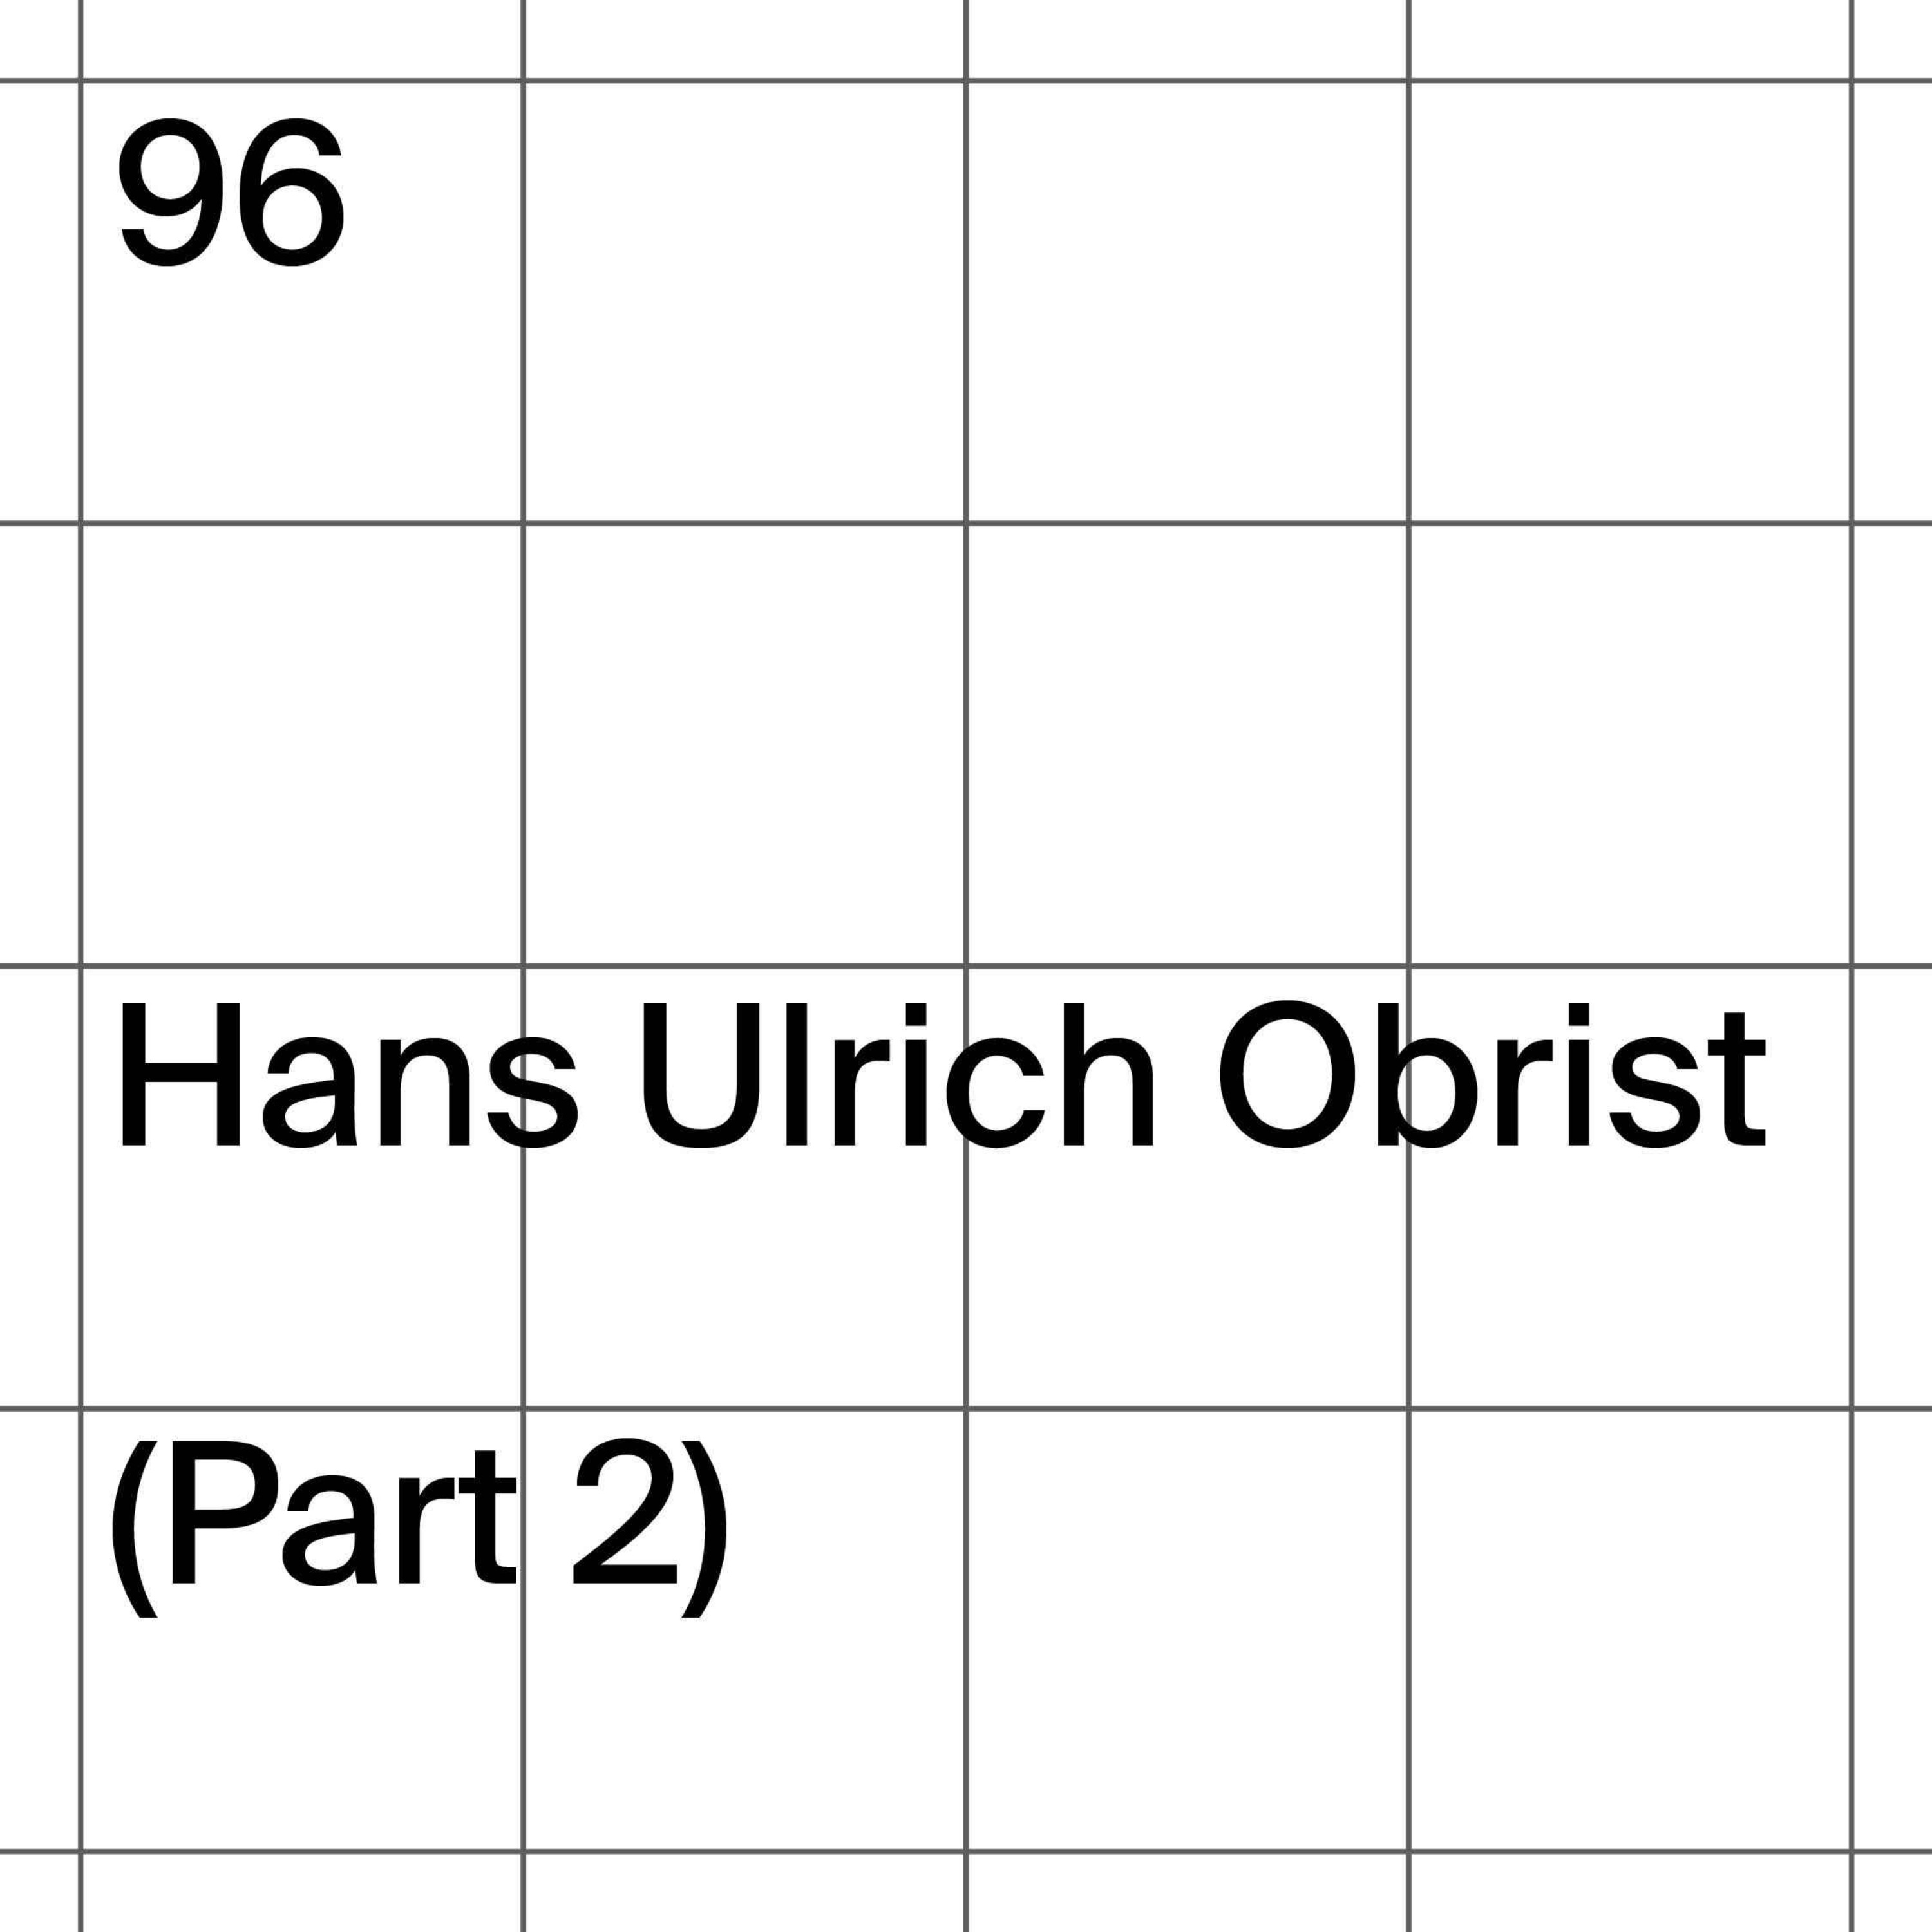 96: Hans Ulrich Obrist (Part 2)